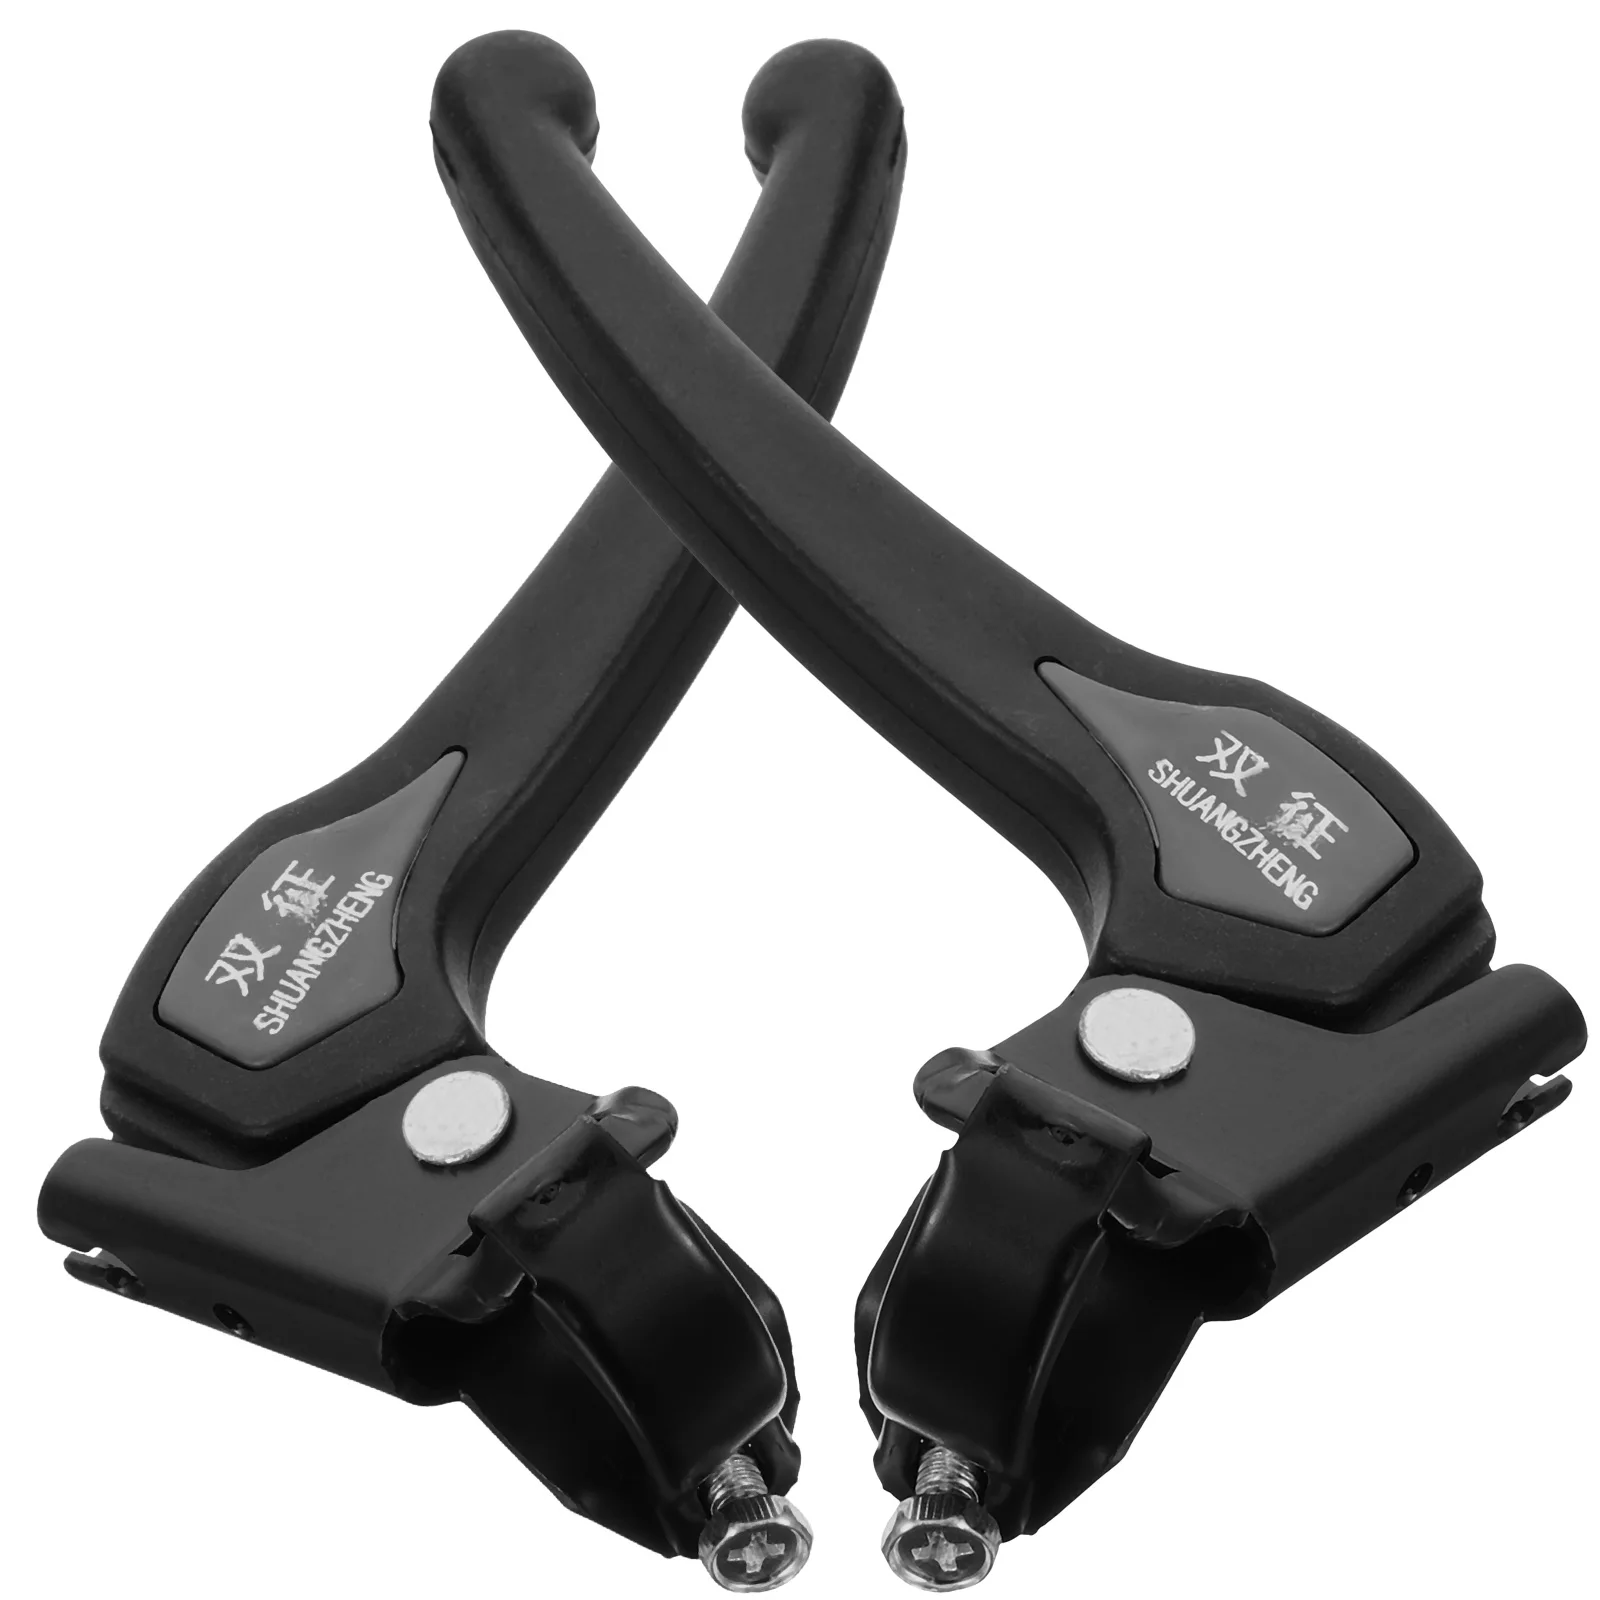 1 Пара тормозных рычагов Тормозные рычаги для инвалидных колясок Пластиковые Тормозные ручки для замены деталей мебели 13 см